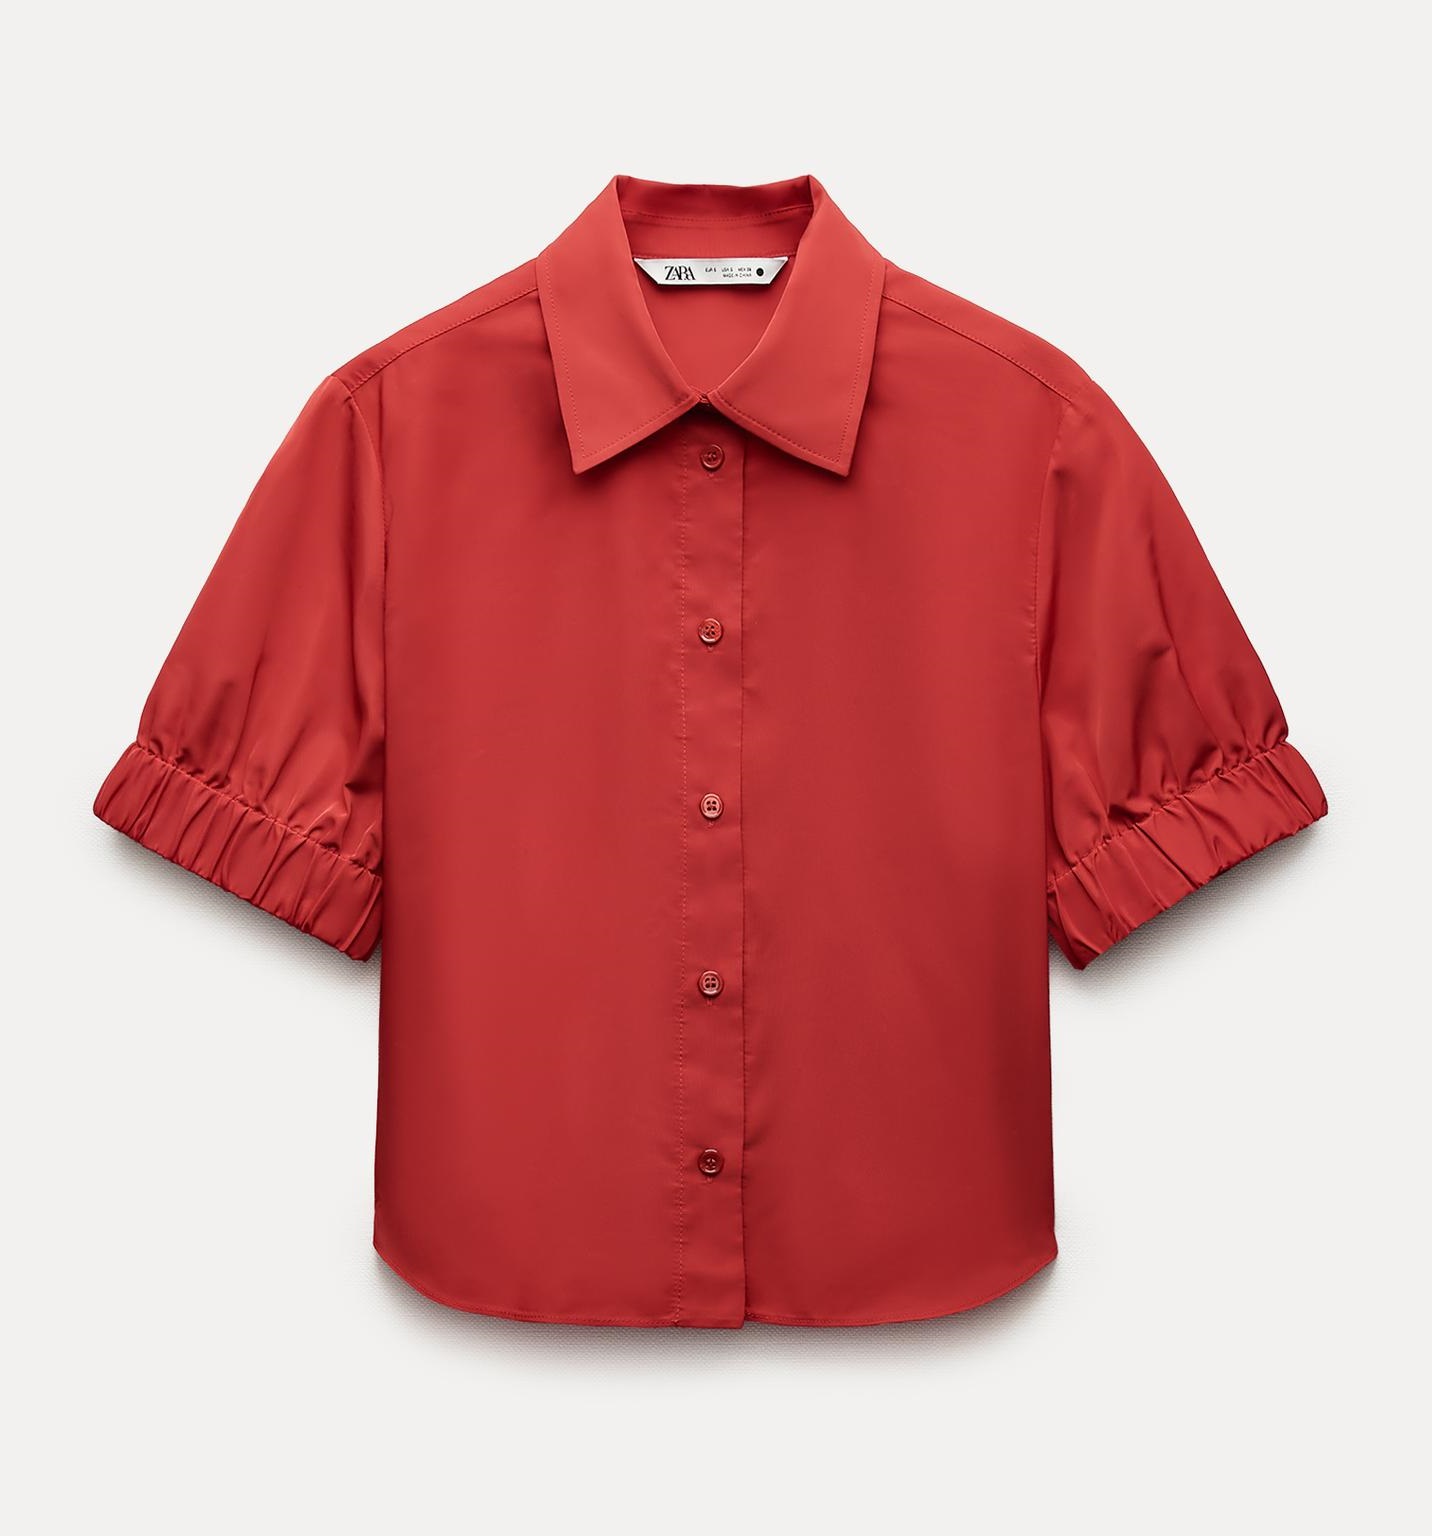 Рубашка Zara ZW Collection Cropped, красный мужская рубашка с отложным воротником уличная повседневная футболка большого размера с 3d рисунком дьявола и короткими рукавами одежда дл